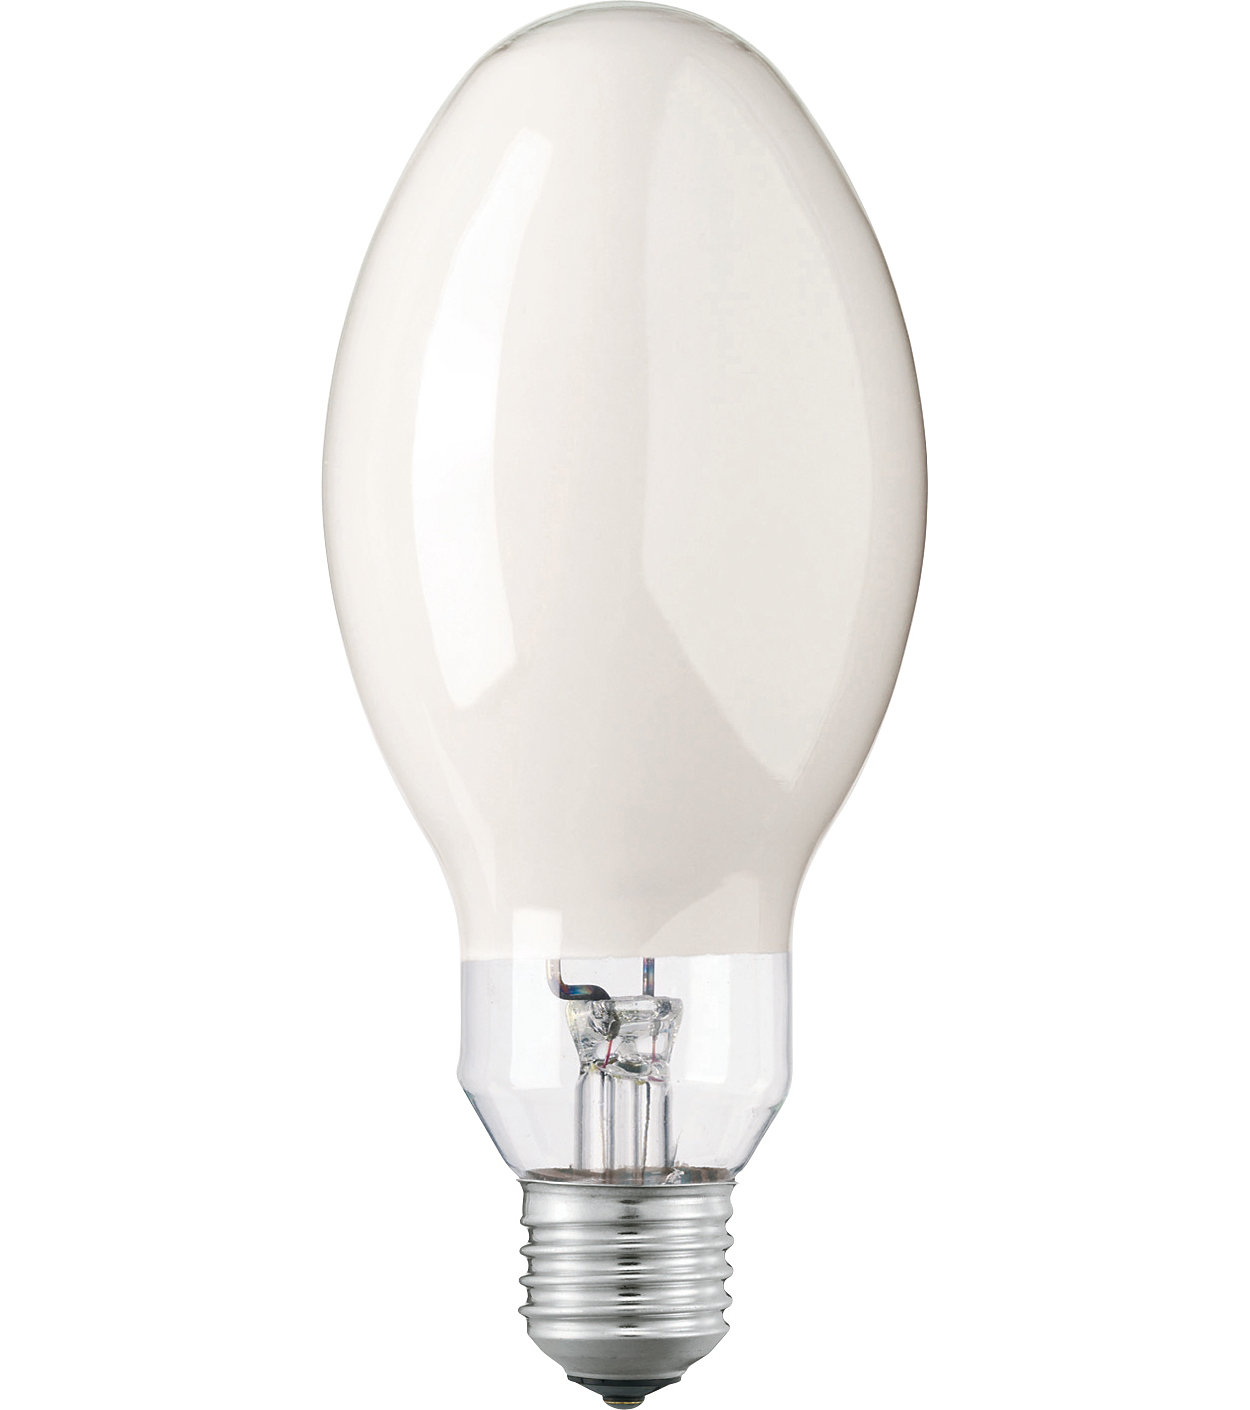 HPL-N HRL QE-125-H-E27 Quecksilberdampf-Lampe 125W E27 